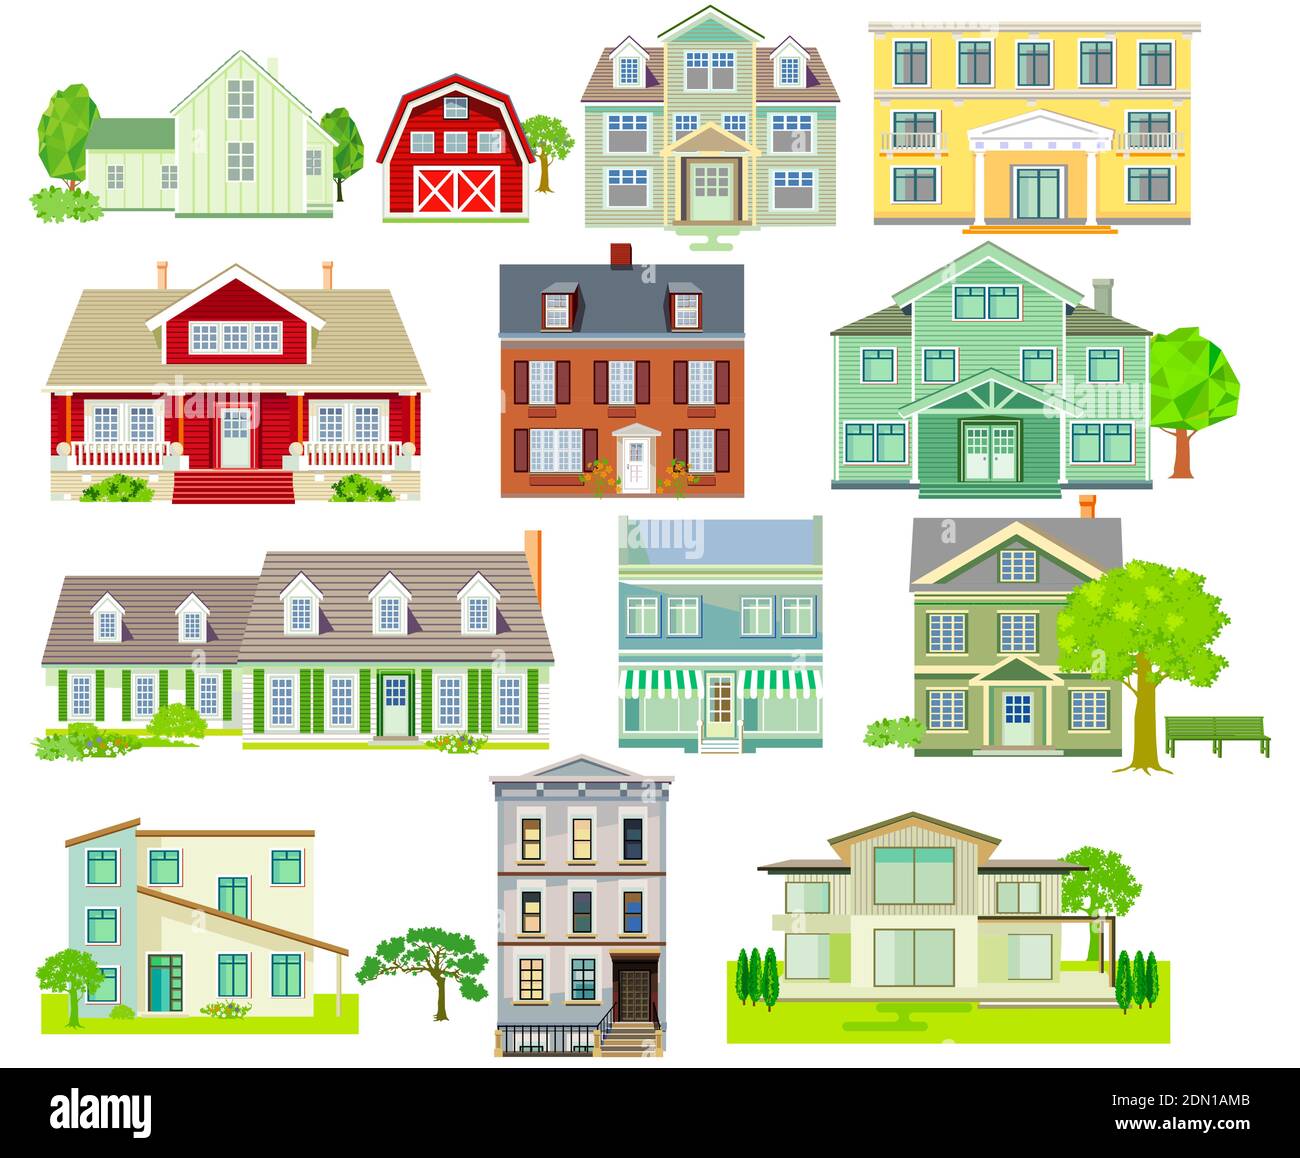 Ensemble de diverses maisons familiales et maisons d'appartements, maisons de campagne, maisons en bois Illustration de Vecteur